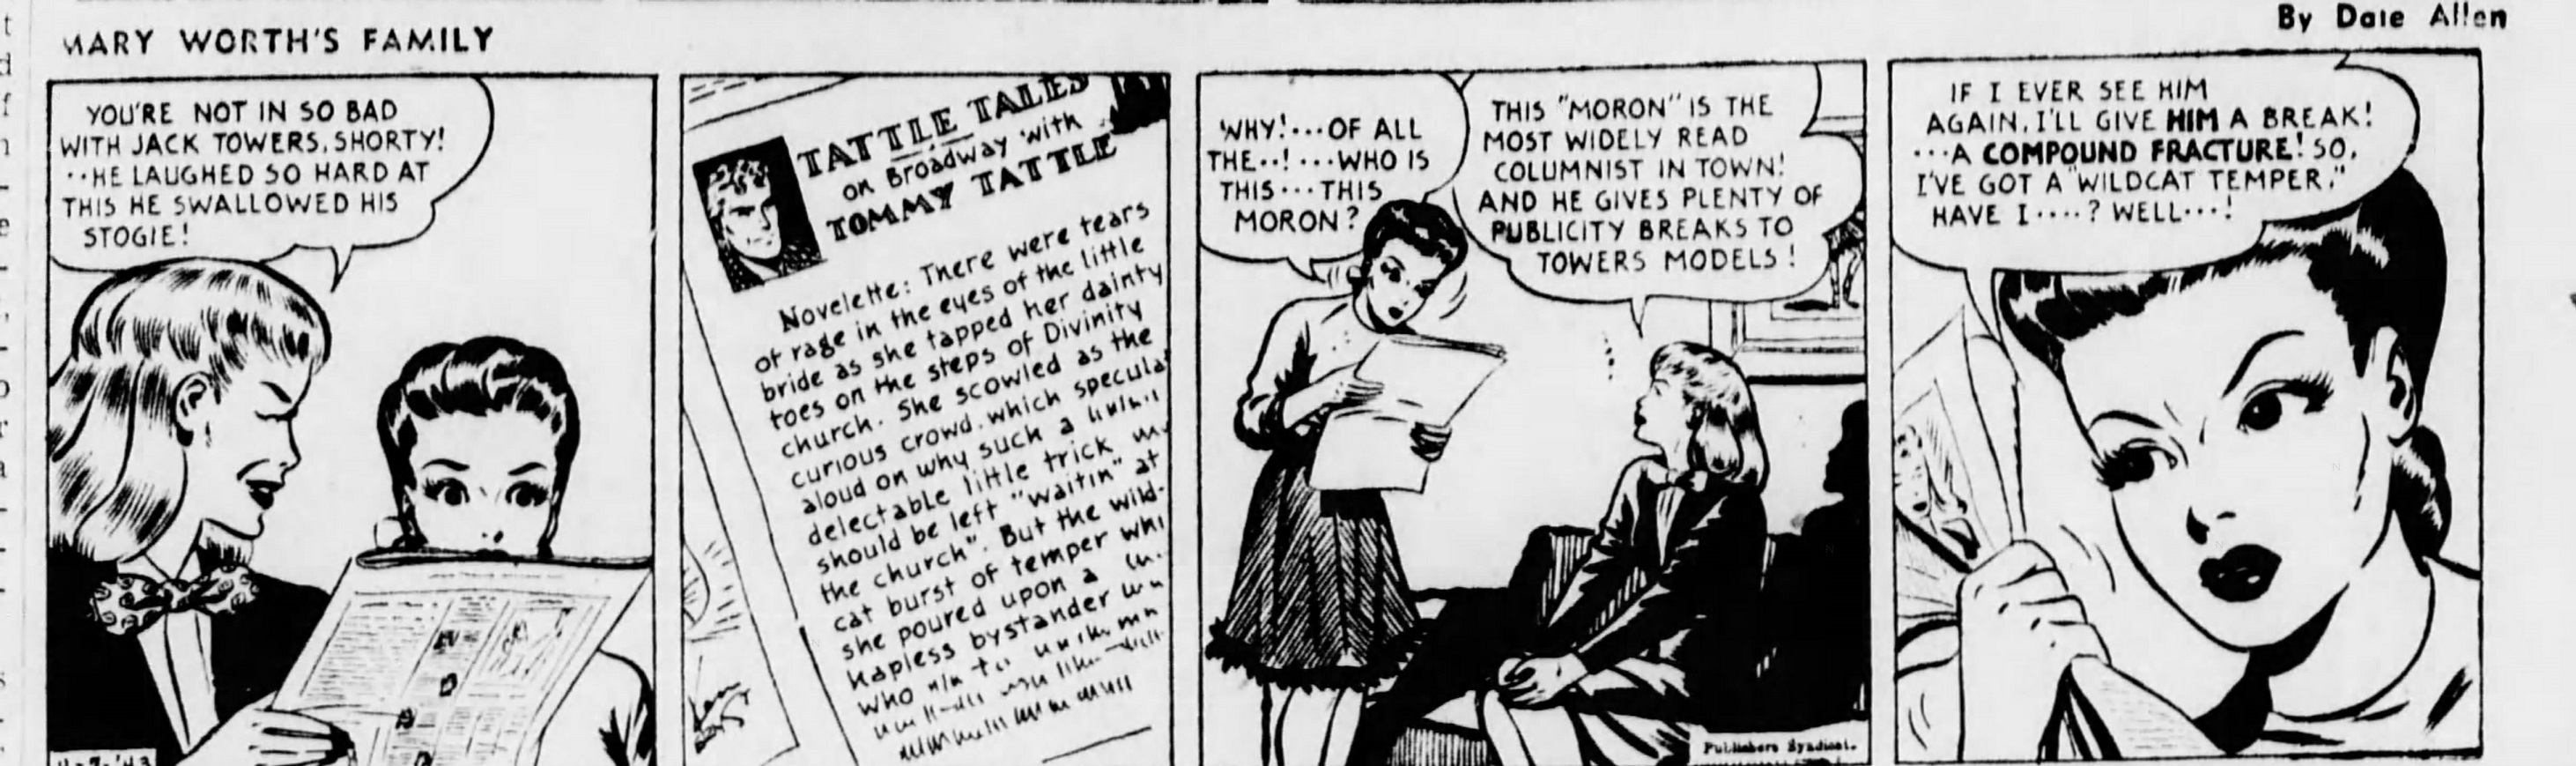 The_Brooklyn_Daily_Eagle_Wed__Apr_7__1943_(6).jpg